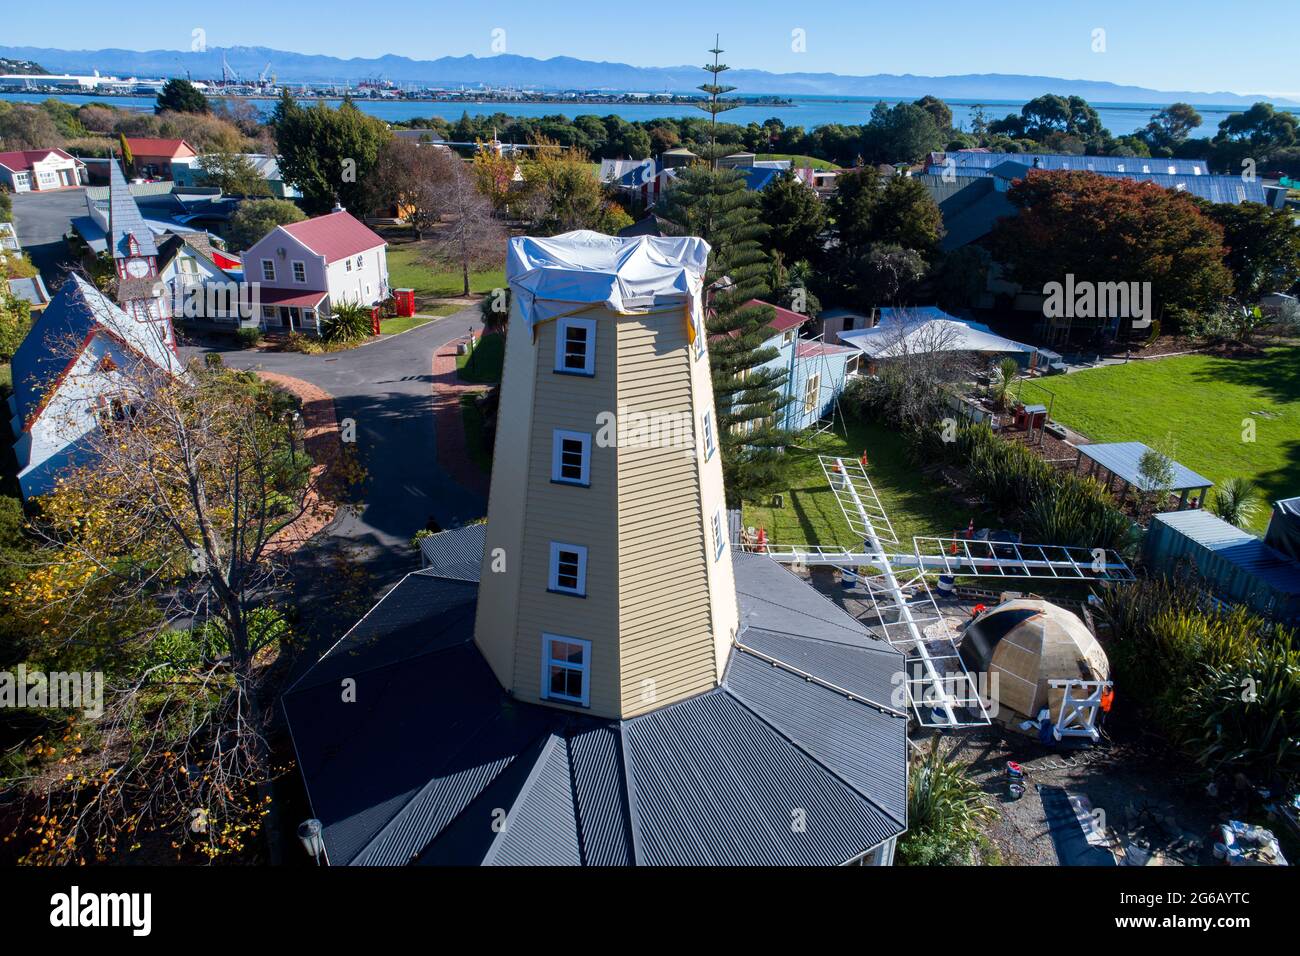 Photo de Tim Cuff 21 mai 2021 - moulin à vent Founders Park, déconstruit, Nelson, Nouvelle-Zélande Banque D'Images